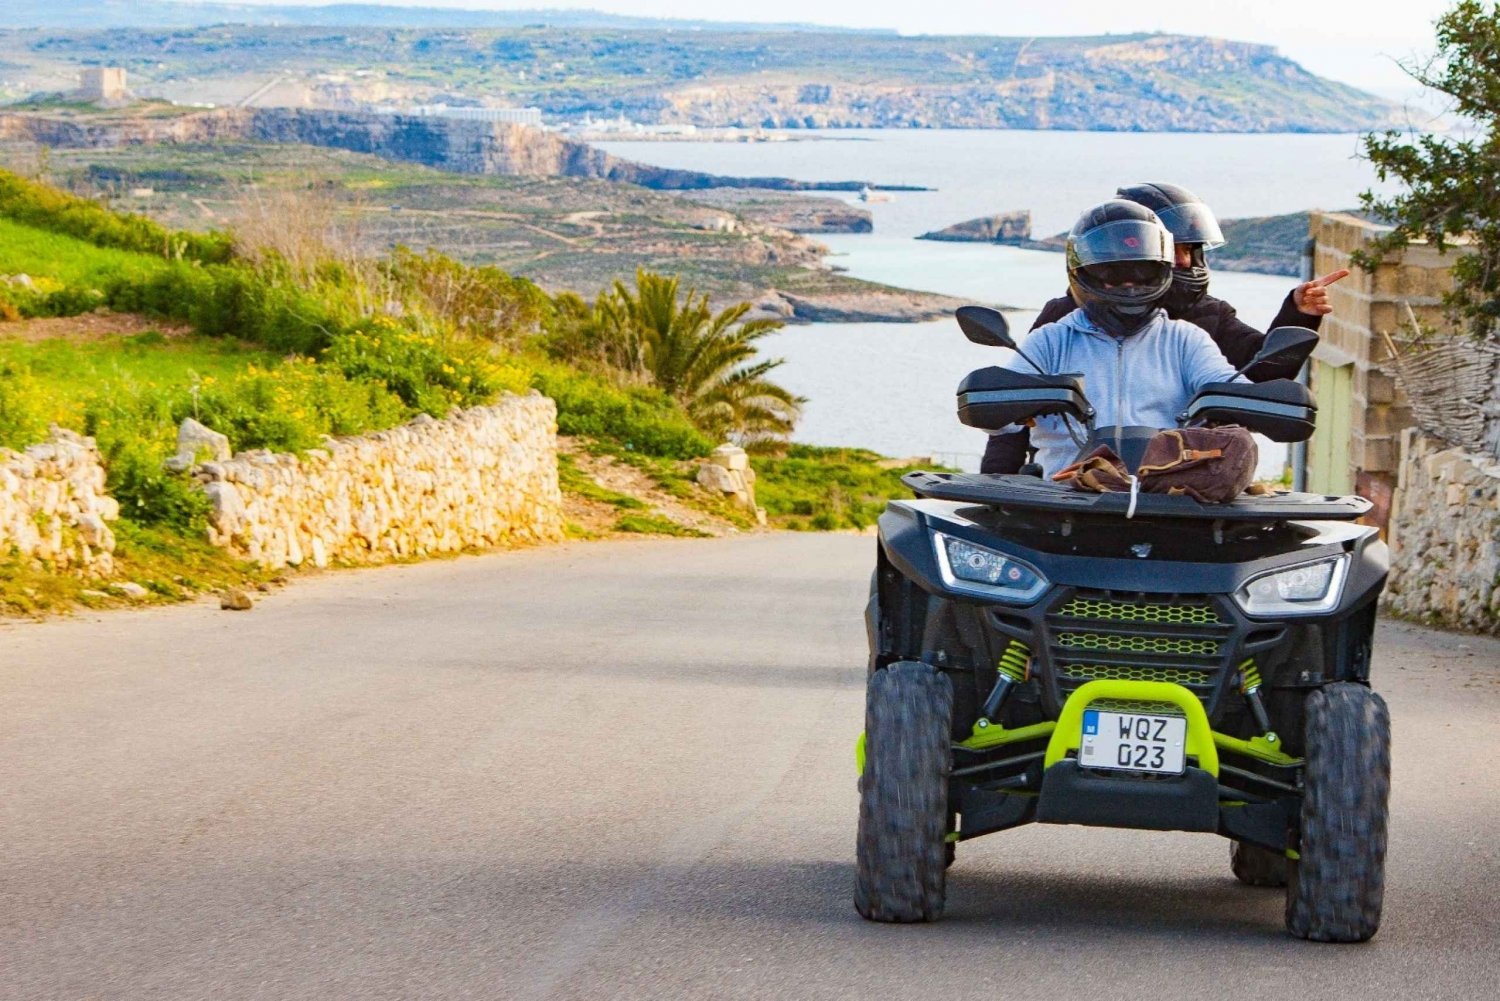 De Malta: Excursão de 1 dia de quadriciclo em Gozo com almoço e barco